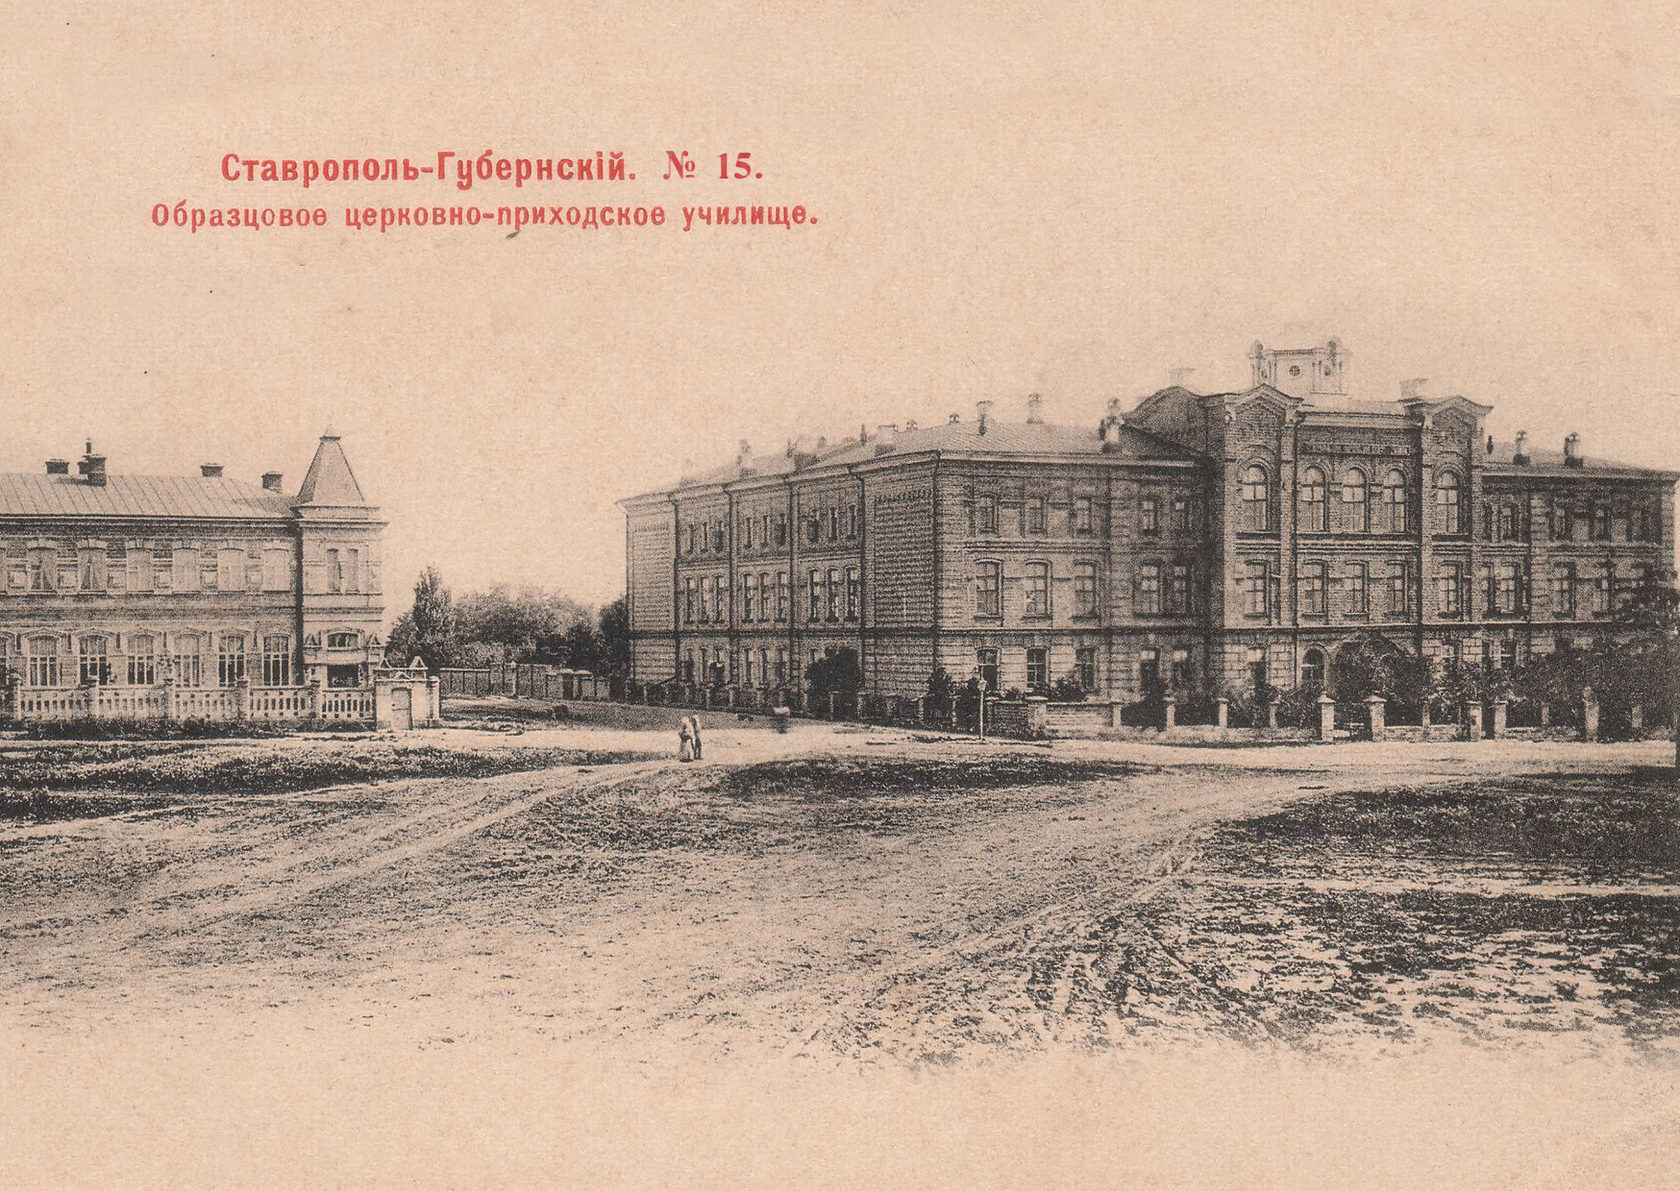 картинка старая ретро открытка дореволюционного времени с изображением Образцового церковно-приходского училища проспекта города Ставрополя